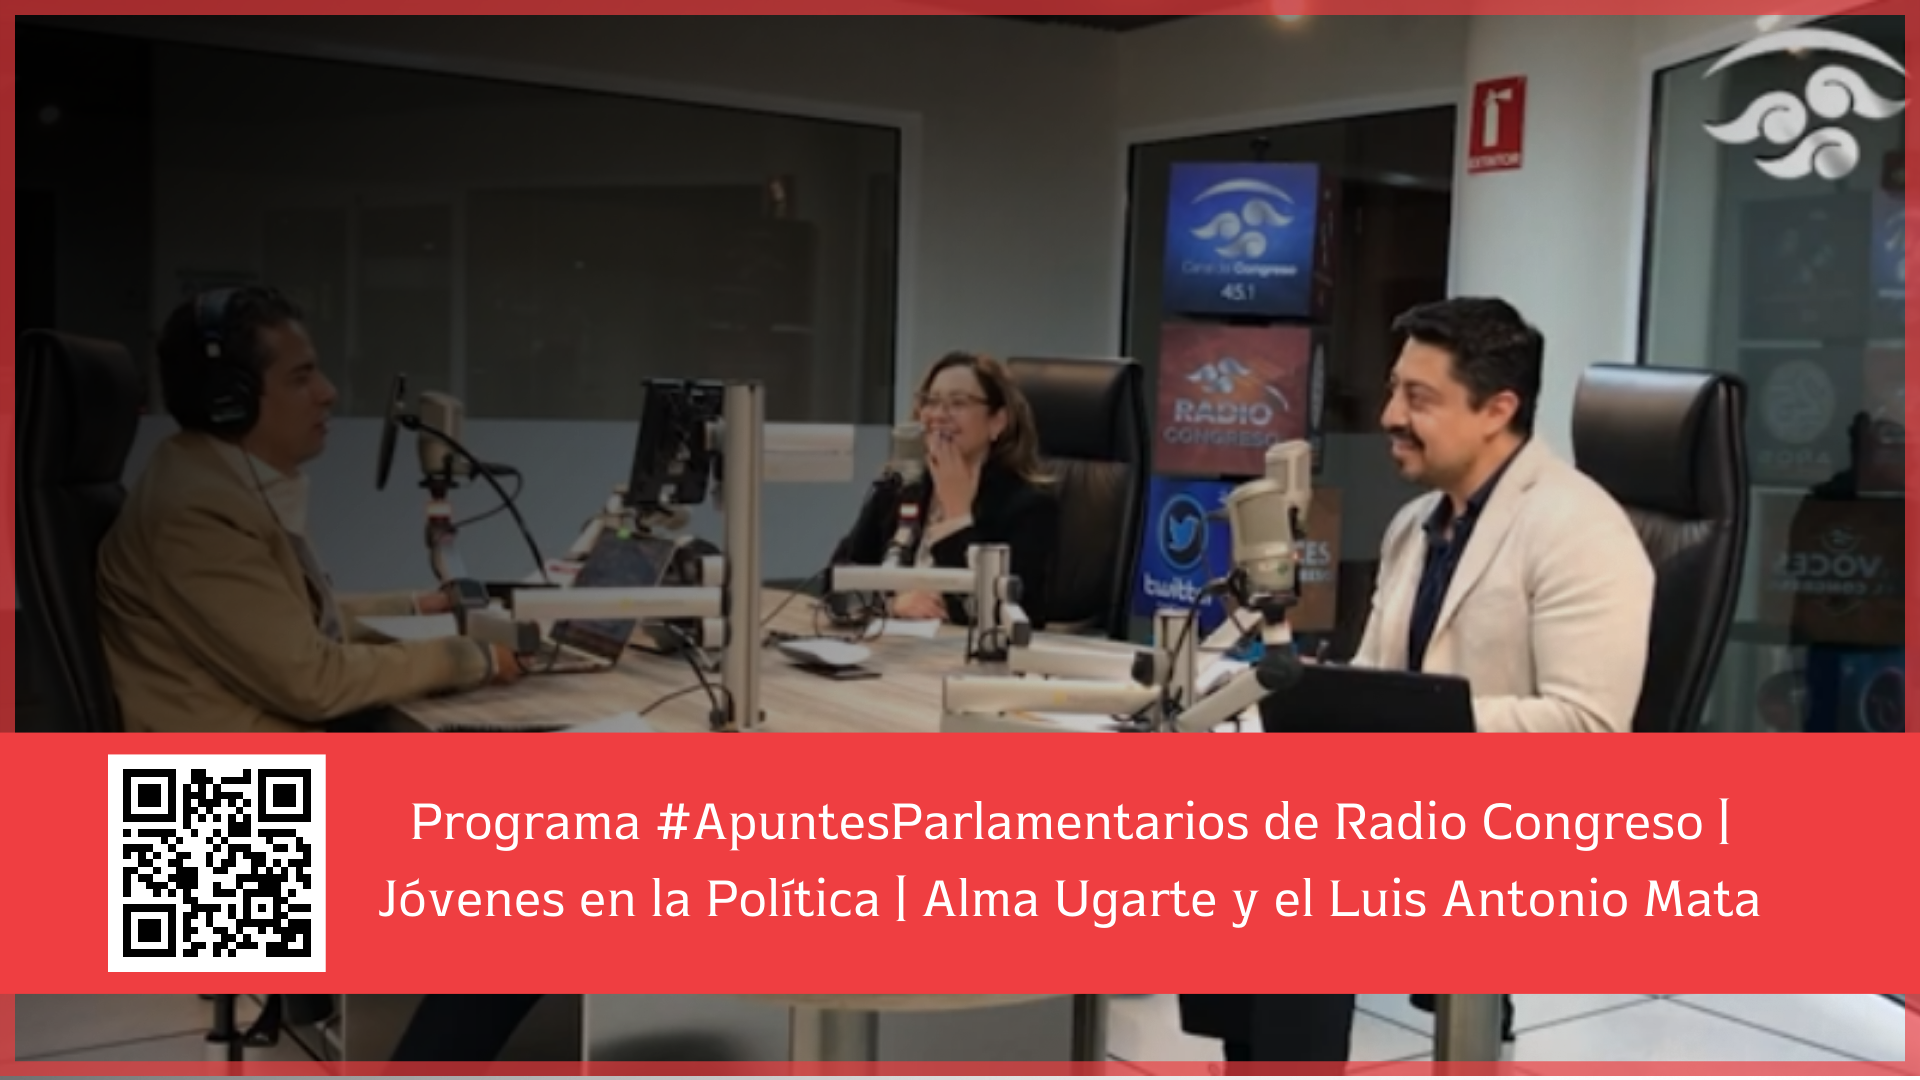 Programa #ApuntesParlamentarios de Radio Congreso Jóvenes en la Política Alma Ugarte y el Luis Antonio Mata